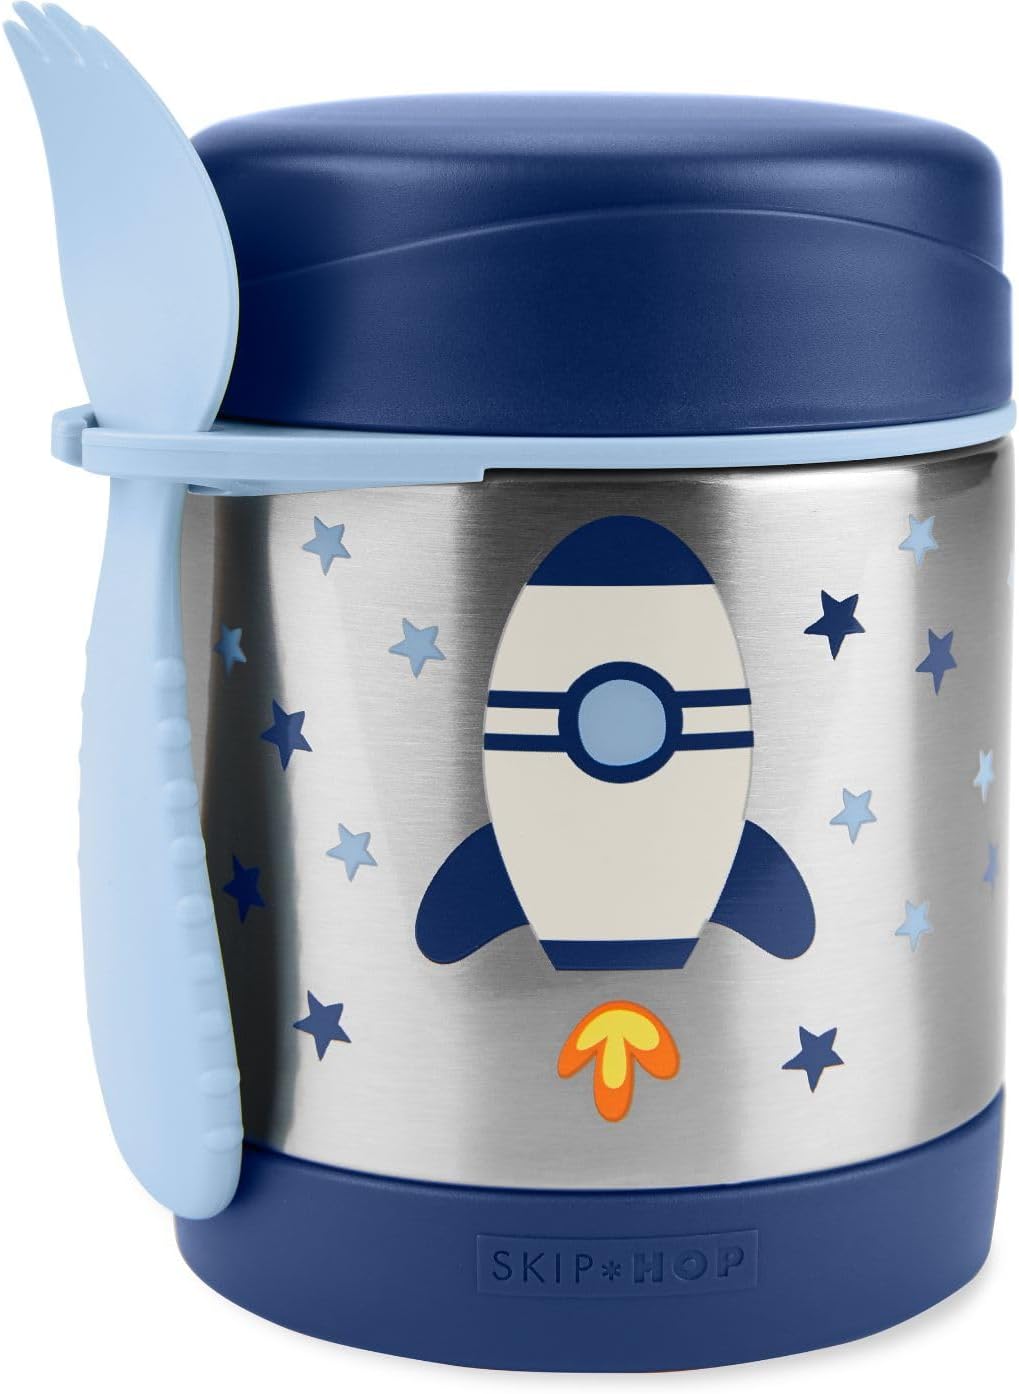 Skip Hop Insulated Baby Food Jar, Sparks, Rocket